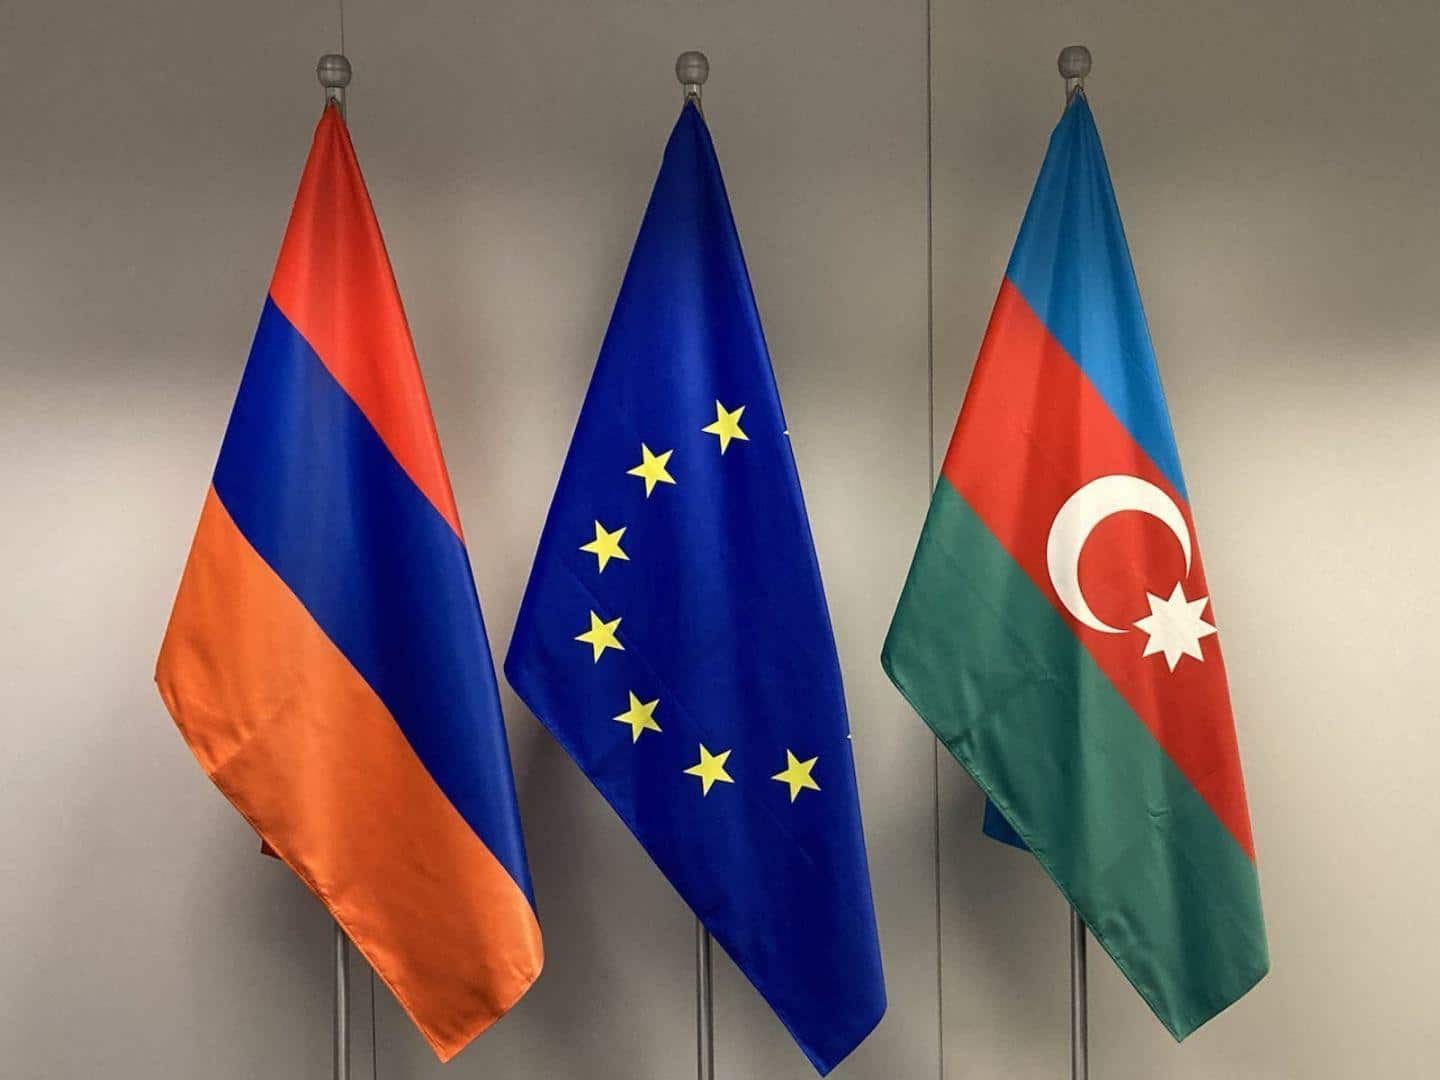 Եվրամիությունը Հայաստանին ու Ադրբեջանին կոչ է անում խուսափել հետագա բռնությունից